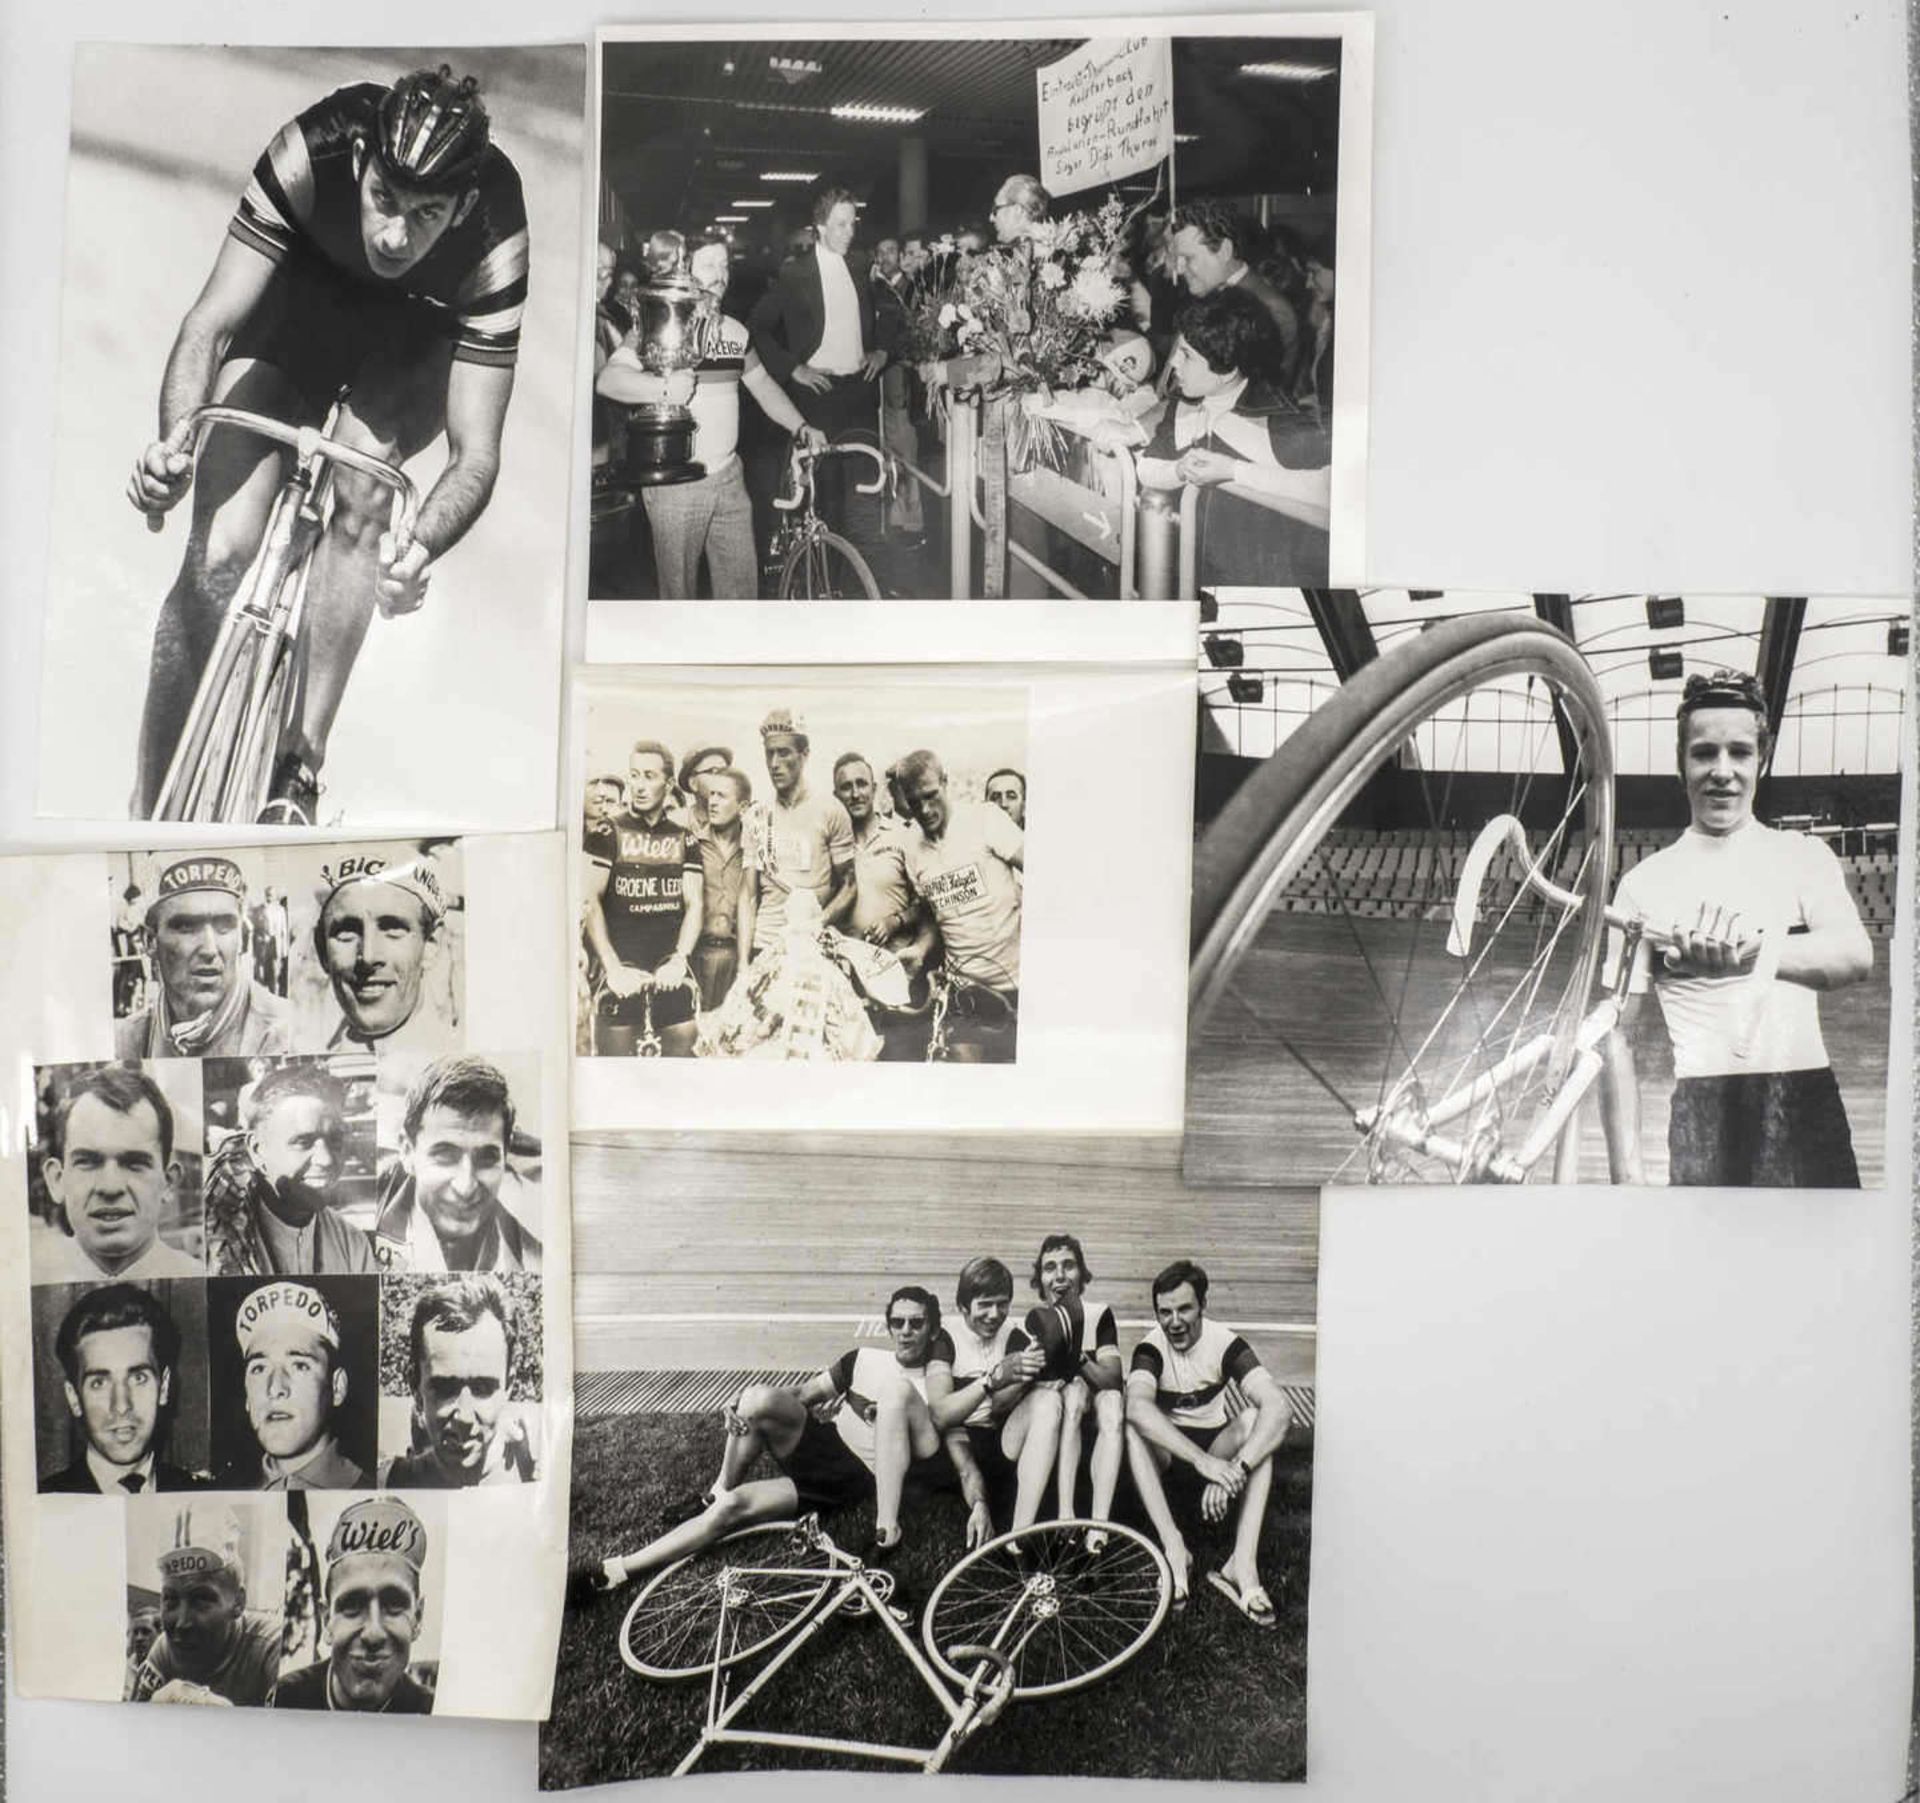 Lot 18 Pressefotos "Radrennfahrer" u. a. Eddy Merckx, Dietrich Thurau, Pater Post, Gregor Braun, - Bild 2 aus 3